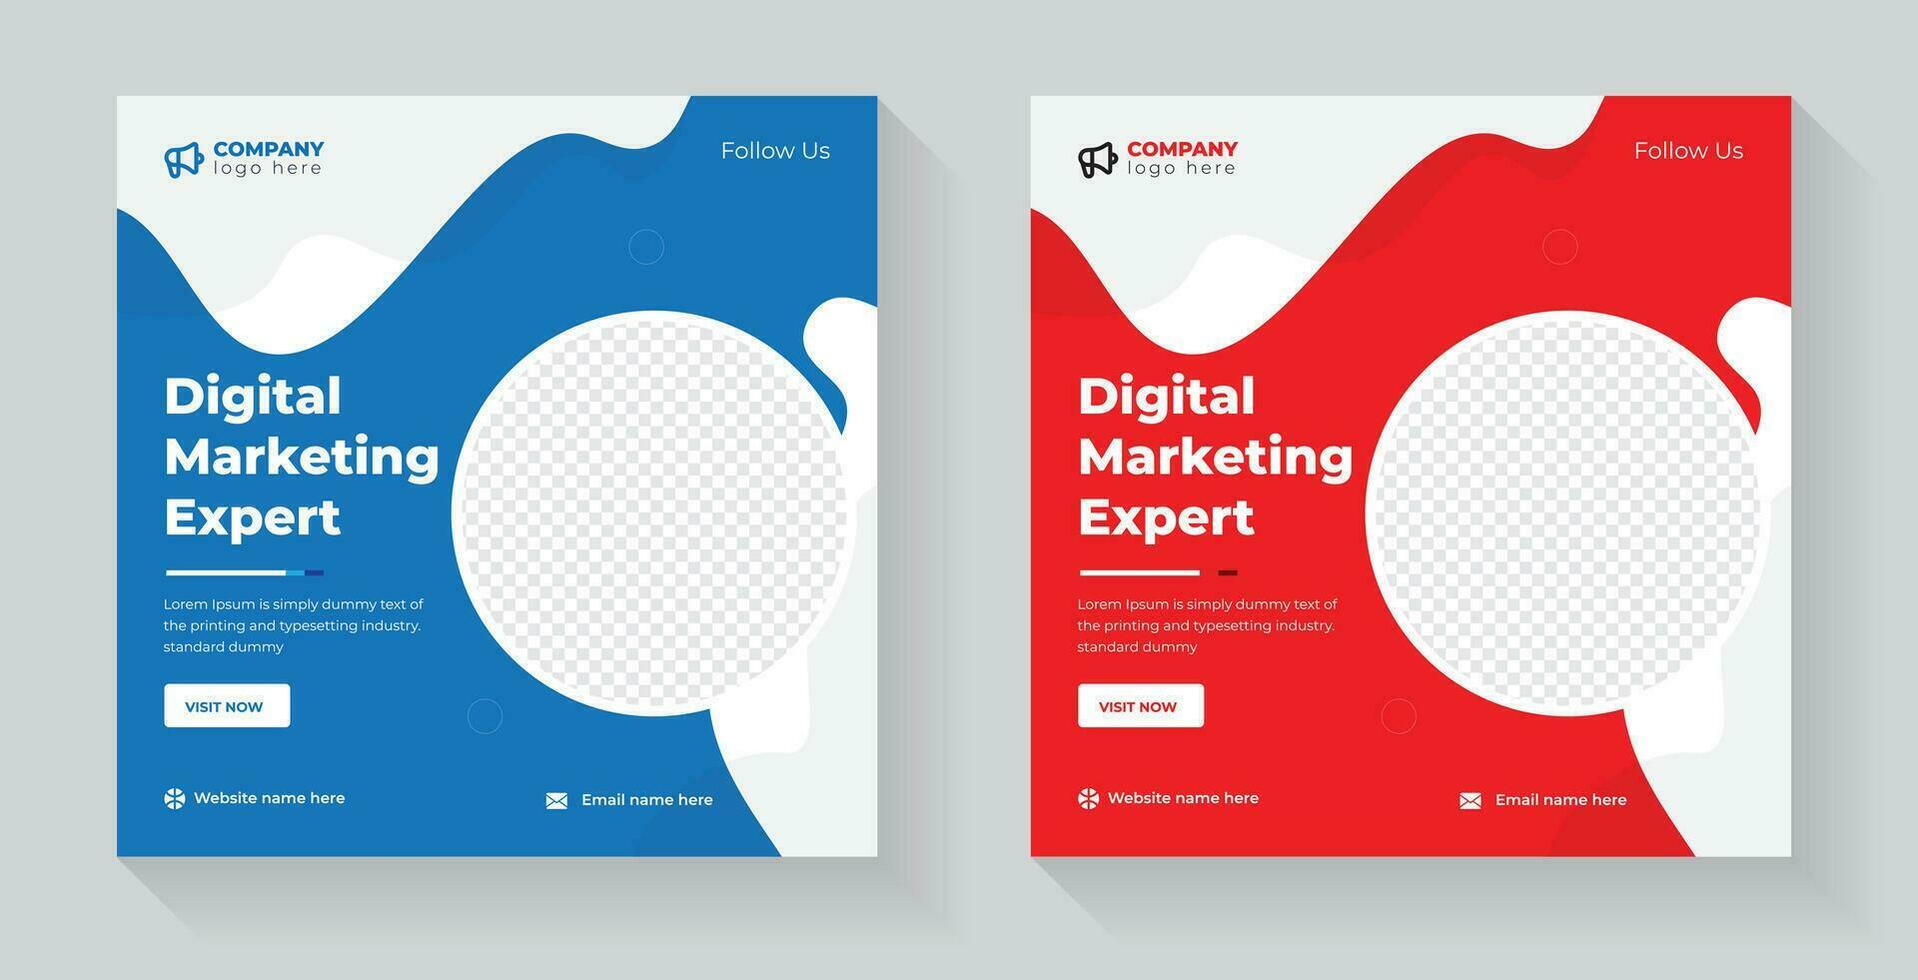 social medios de comunicación enviar para digital márketing expertos uno de cuales es rojo y el otro es azul vector